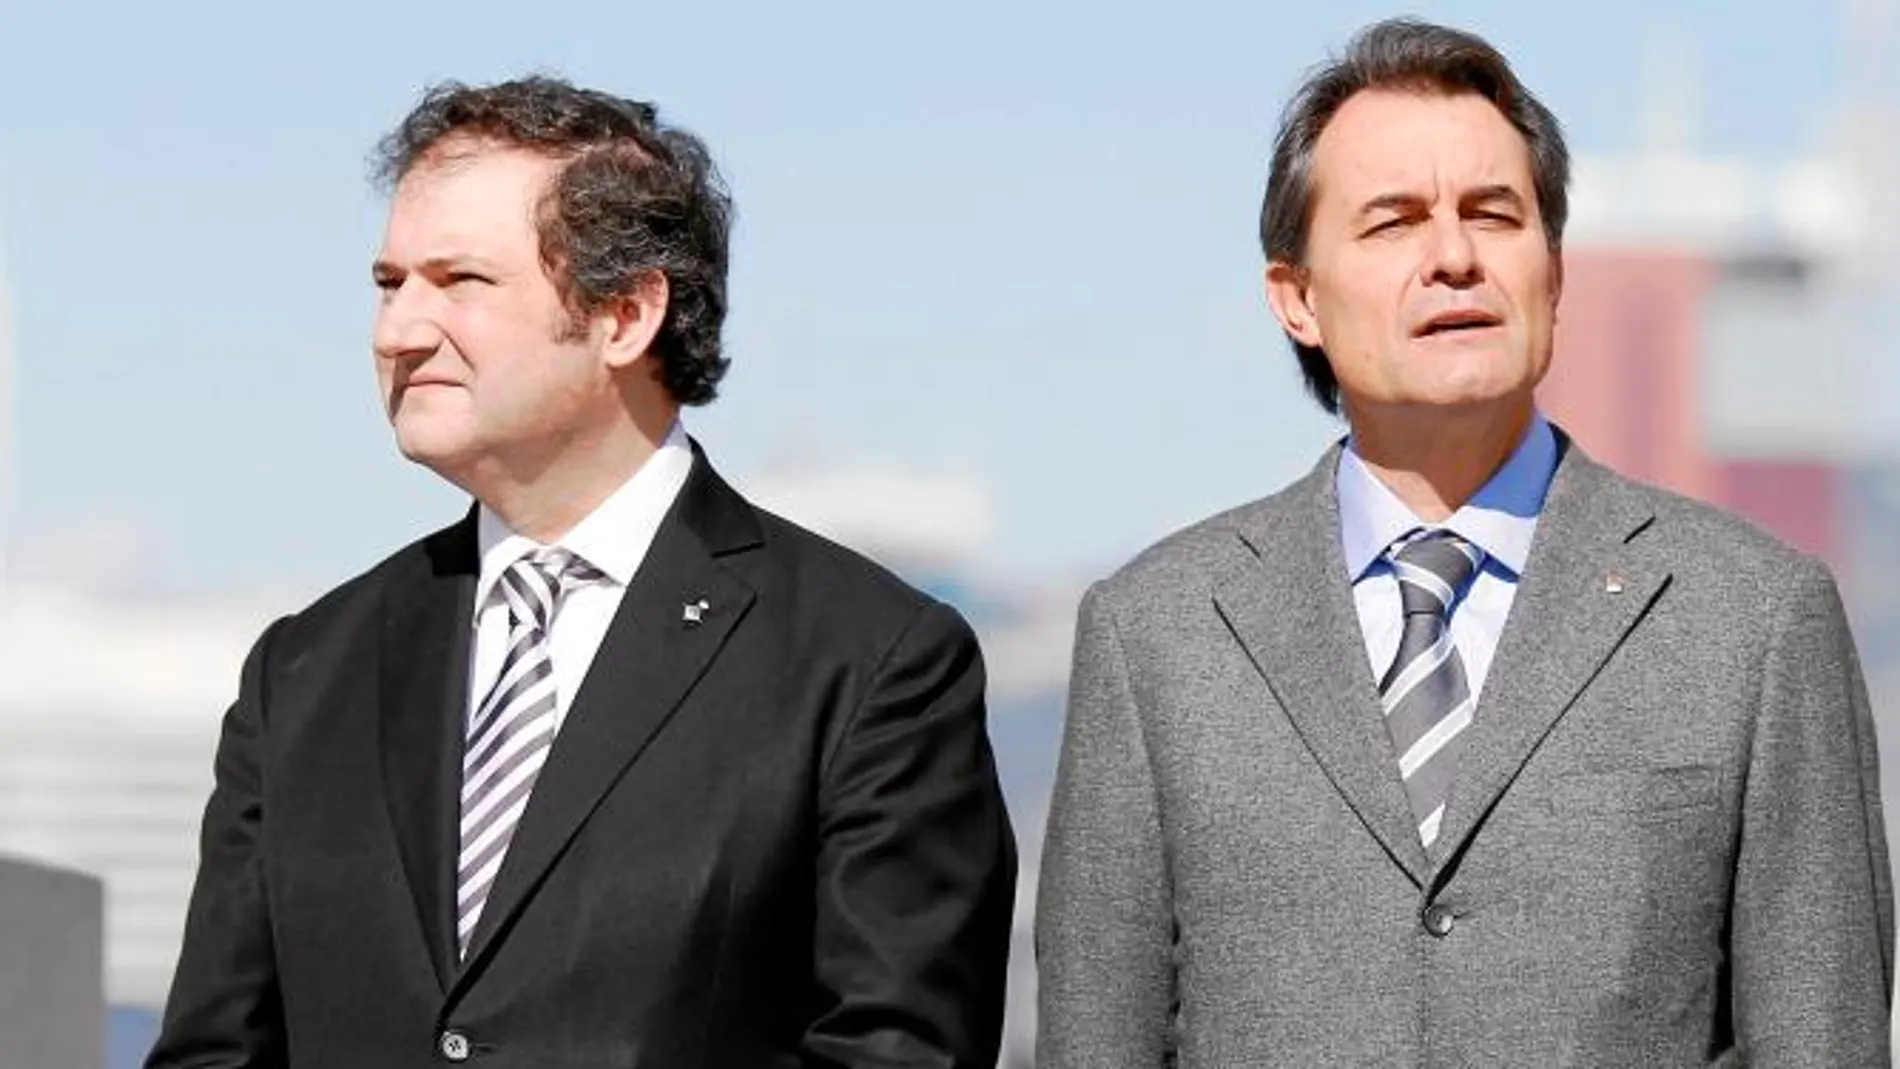 El alcalde Jordi Hereu, junto al president Mas, cederá su puesto al convergente Xavier Trias el viernes de la semana que viene